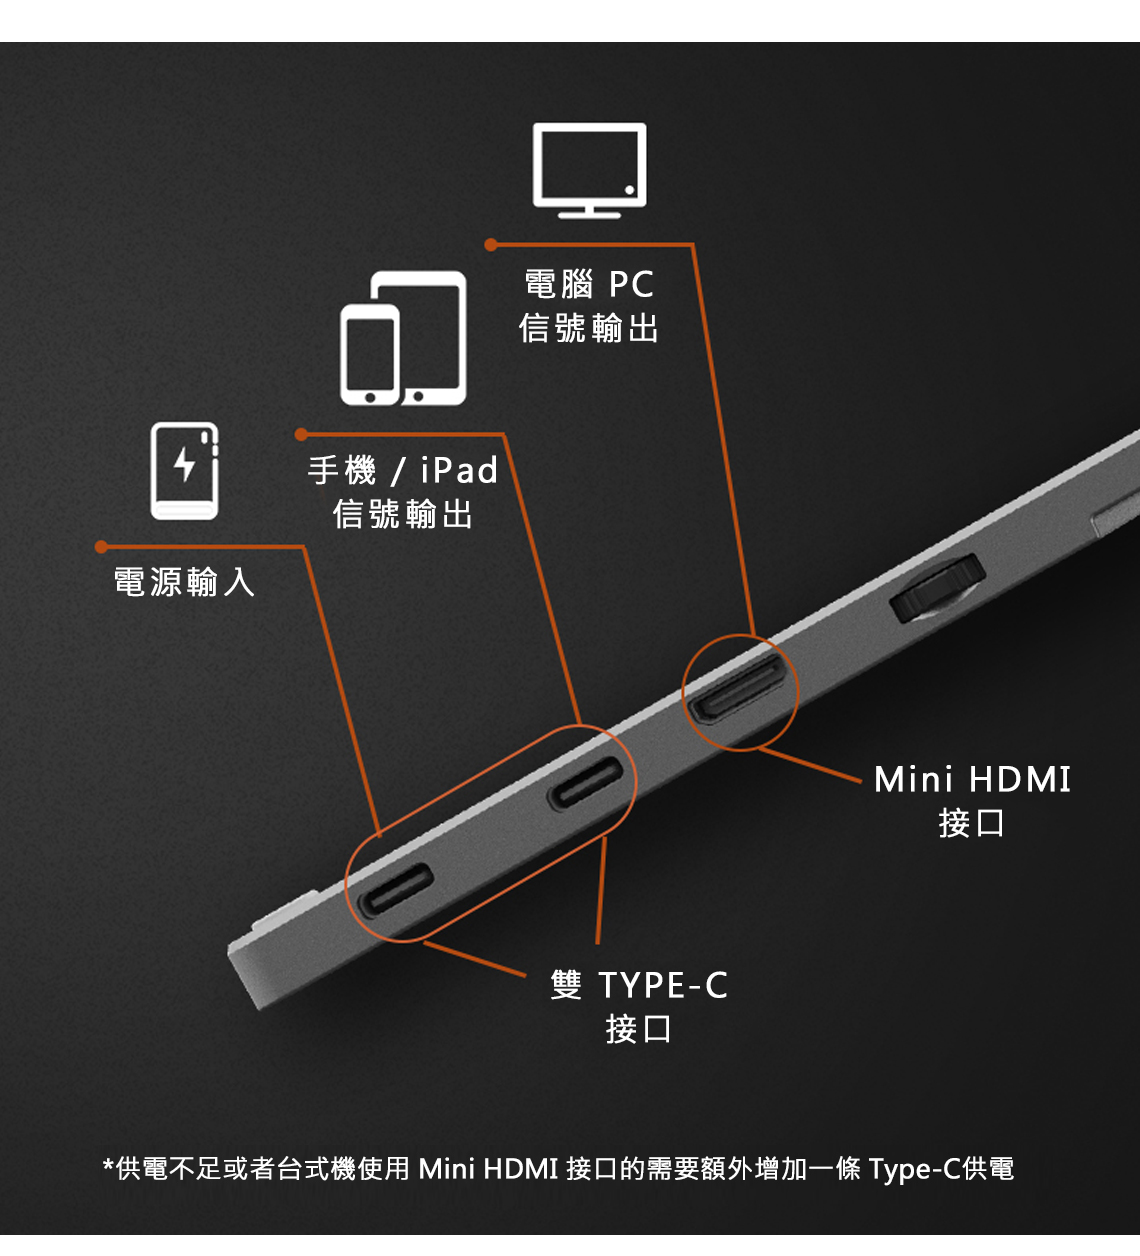 手機/ iPad信號輸出電源輸入電腦 PC信號輸出雙 TYPE-C接口Mini HDMI接口*供電不足或者台式機使用 Mini HDMI 接口的需要額外增加一條 Type-C供電